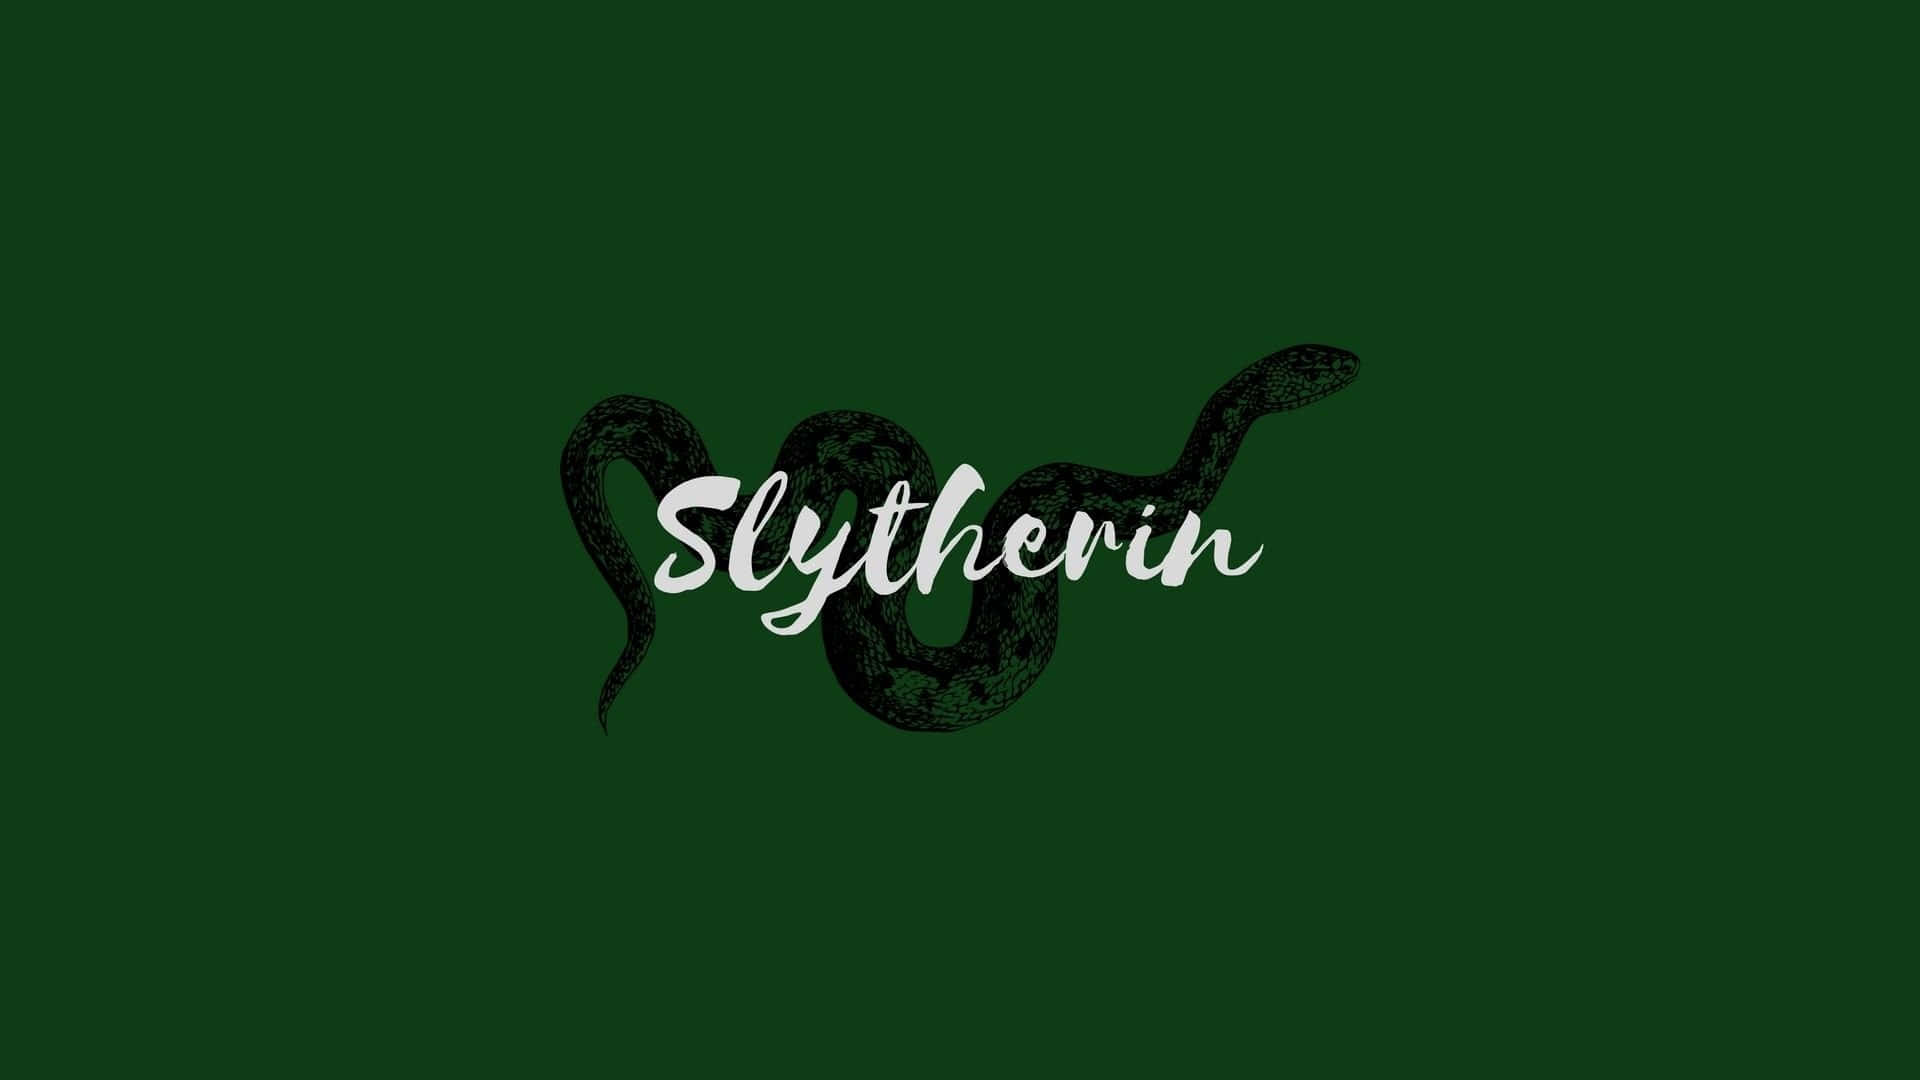 Upplevden Ikoniska Slytherin House-estetiken Med Denna Lyxigt Detaljerade Tematapet.